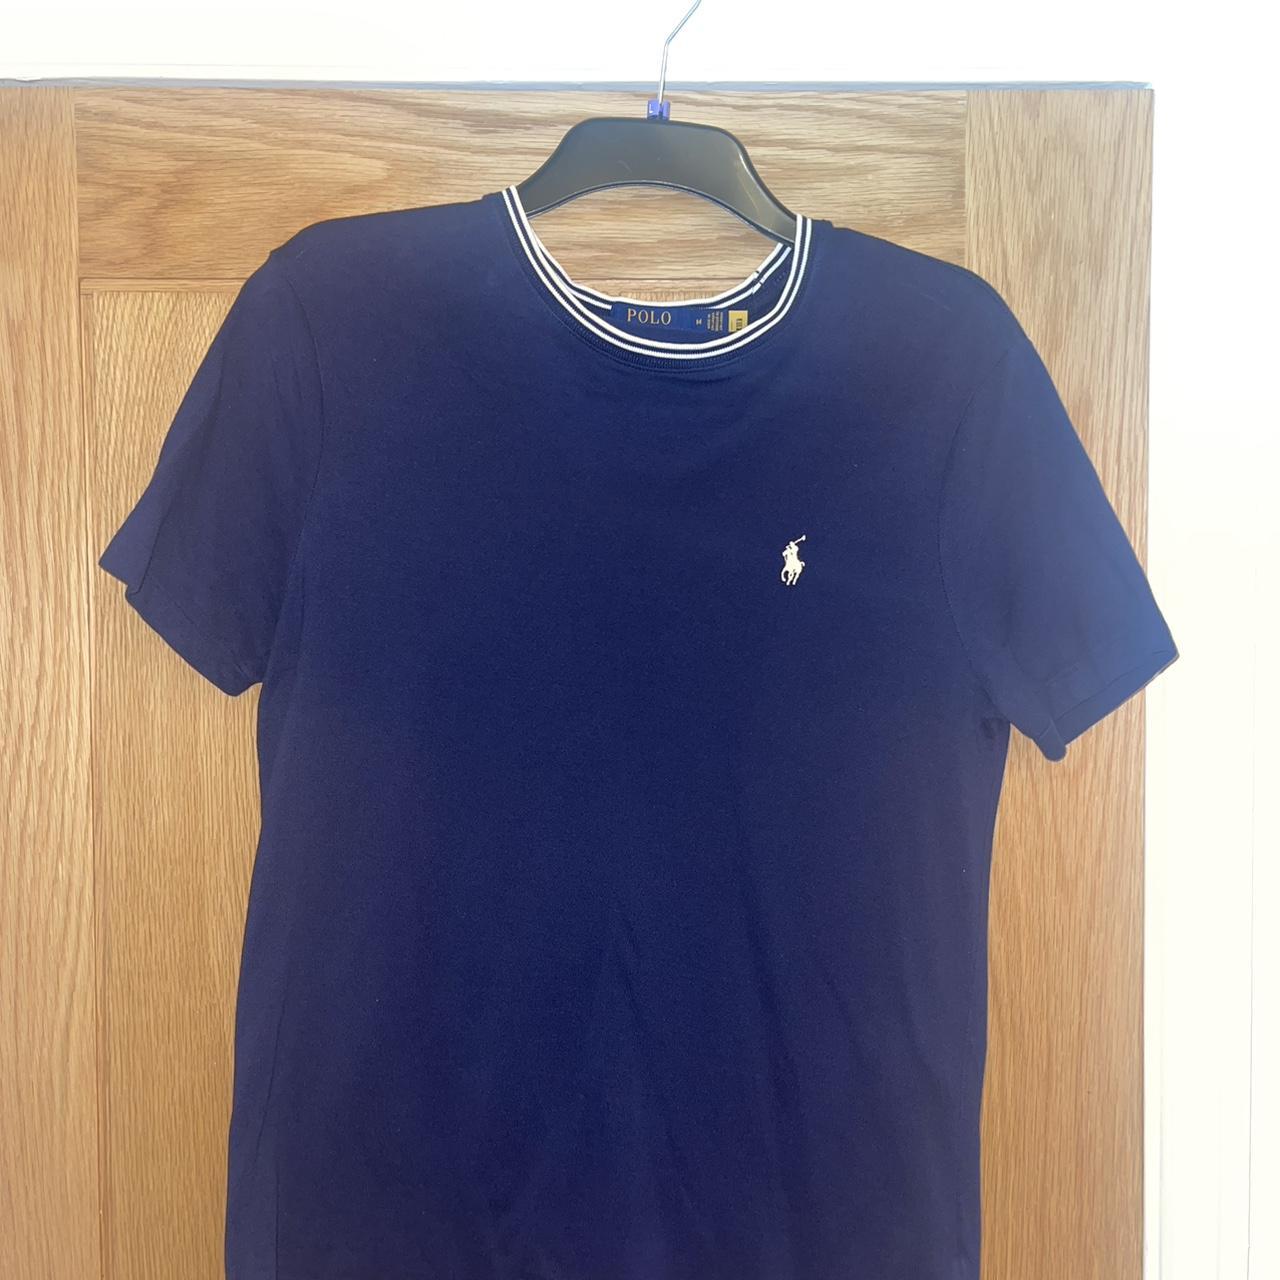 Navy / Blue Ralph Lauren T-shirt | 8/10 Condition |... - Depop